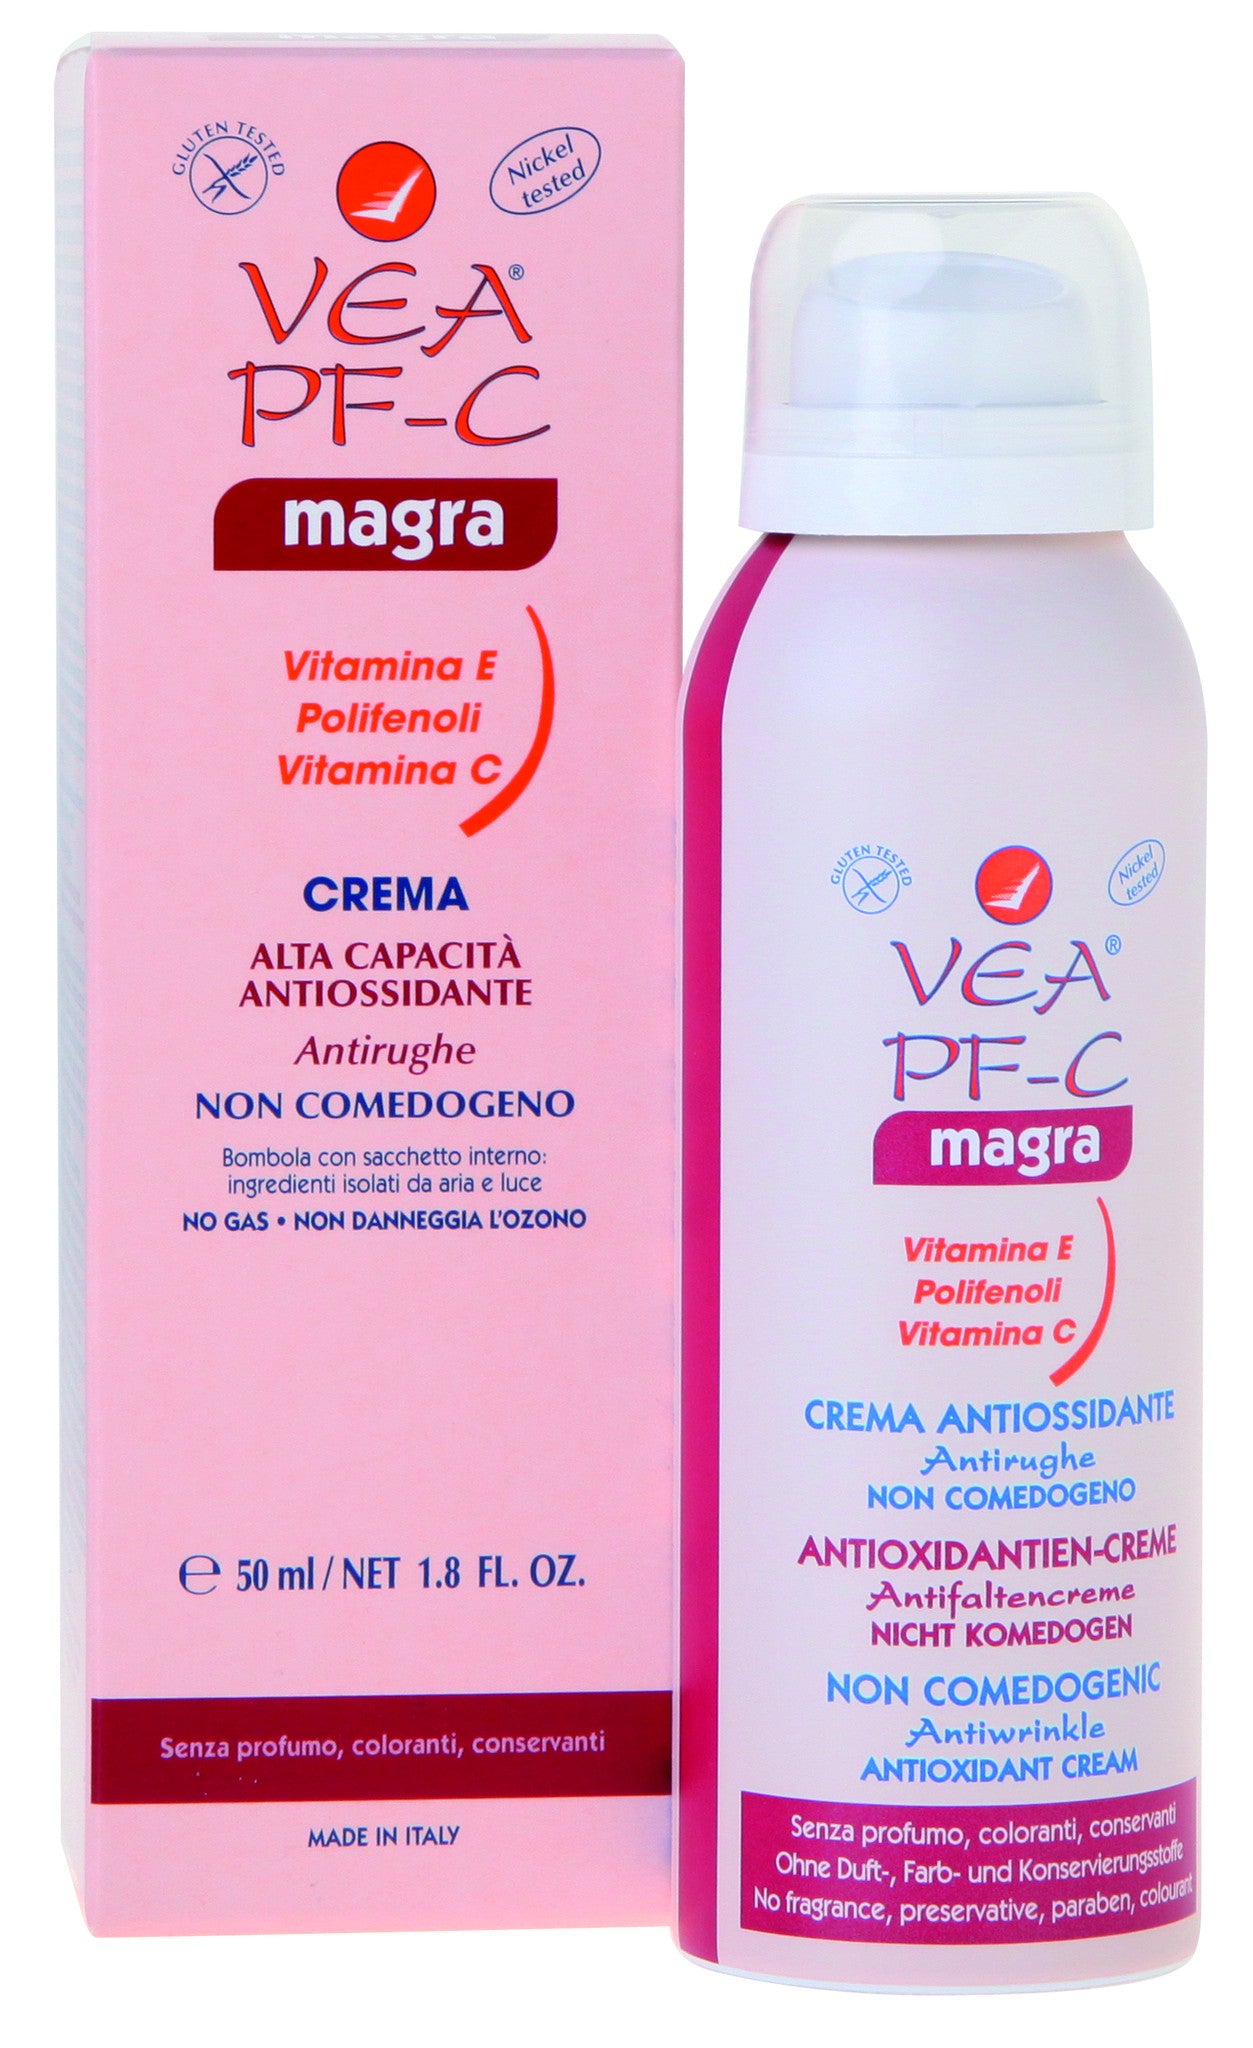 VEA PF-C MAGRA - Health Emporium